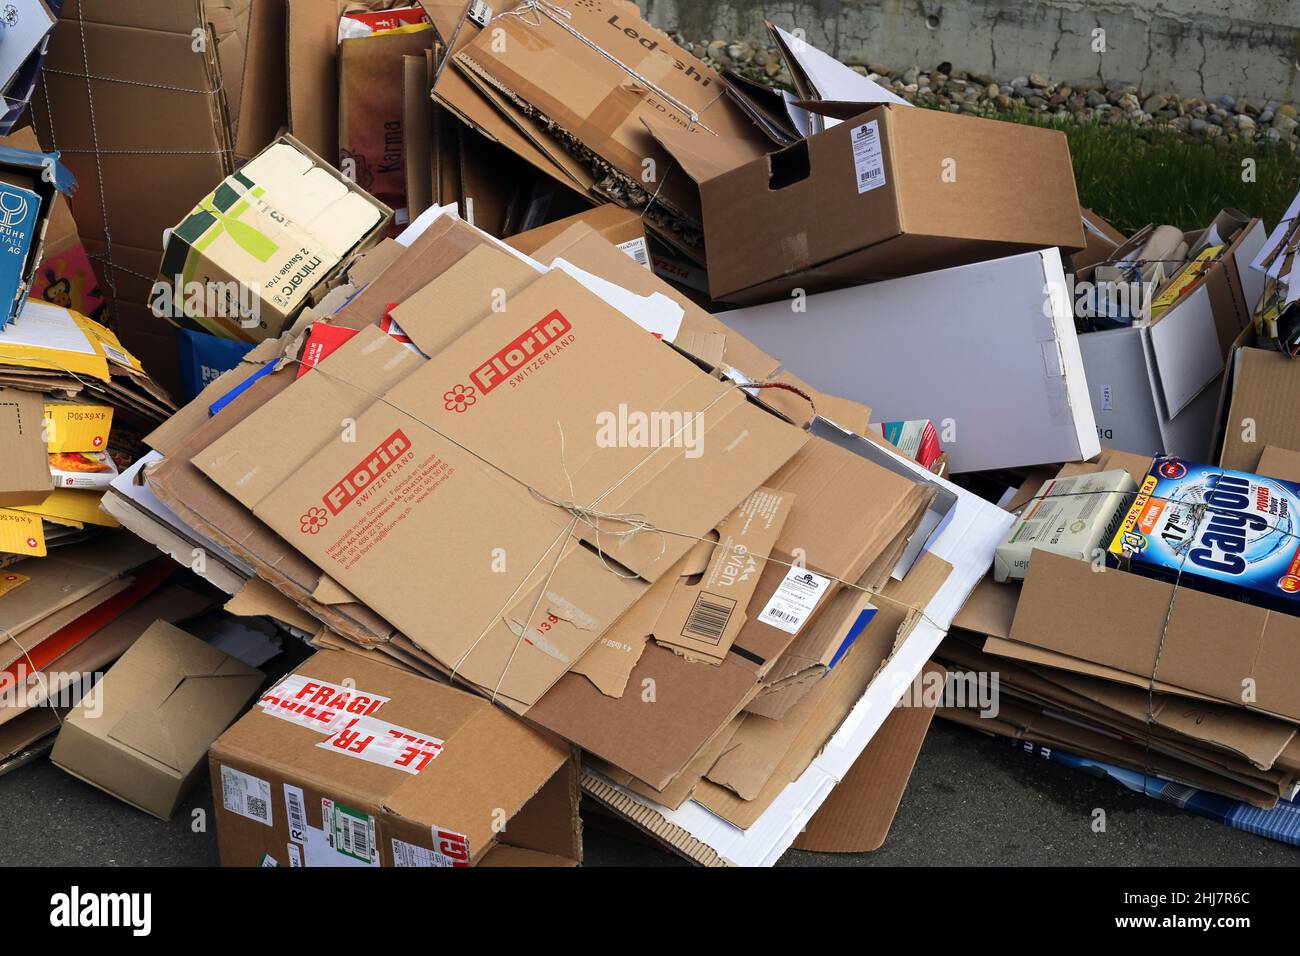 Des conteneurs en carton utilisés dans les rues d'un quartier de Zurich, en Suisse. Mars 2020.emballages de cartons de déchets ménagers prêts à être recyclés Banque D'Images